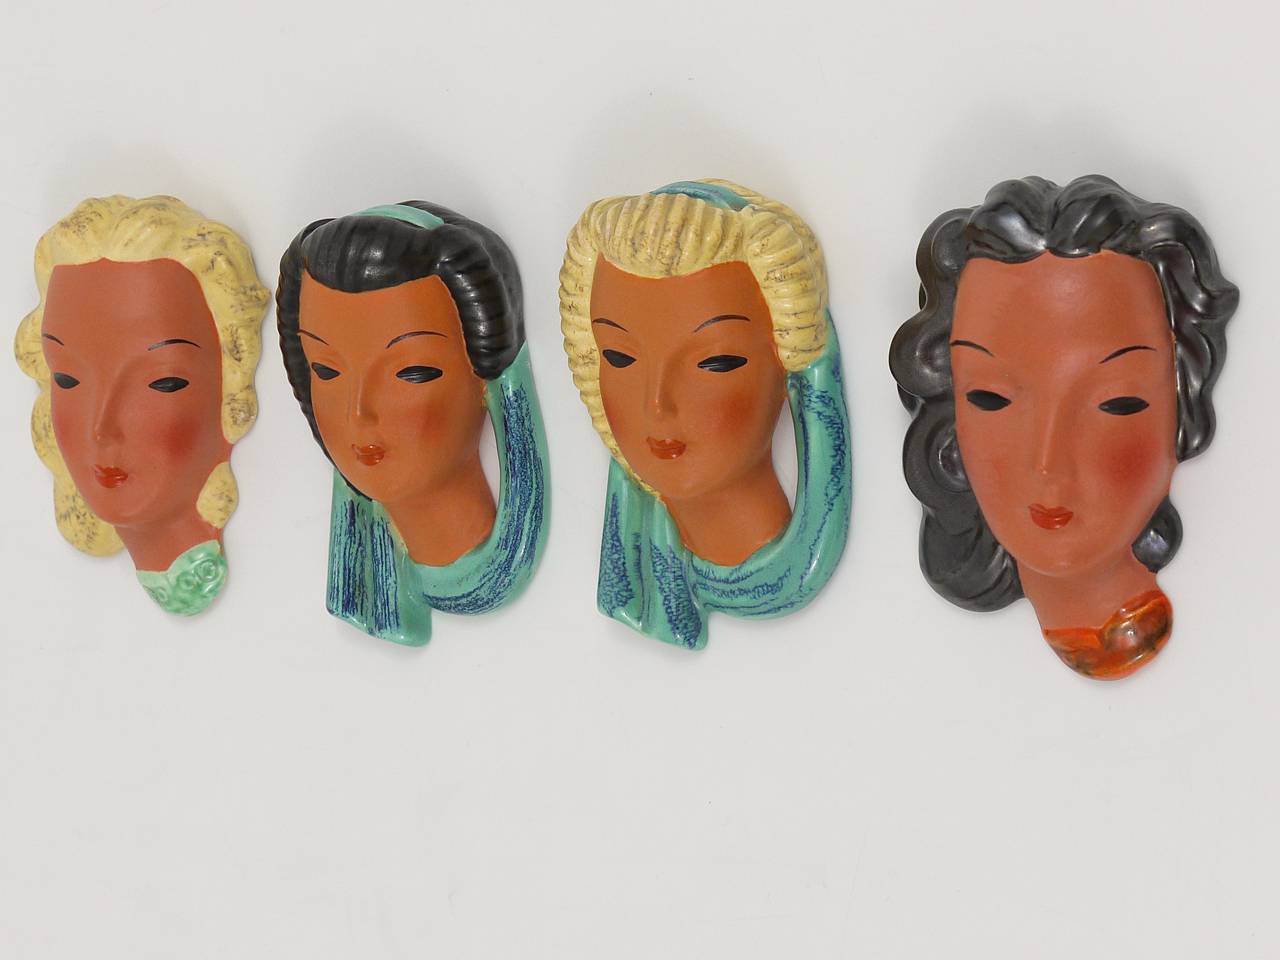 Un bel ensemble de quatre masques muraux miniatures autrichiens en terre cuite, dessinés par Adolf Prischl, exécutés par Friedrich Goldscheider Vienne dans les années 1950. Les quatre masques sont en excellent état. Marqué et numéroté.